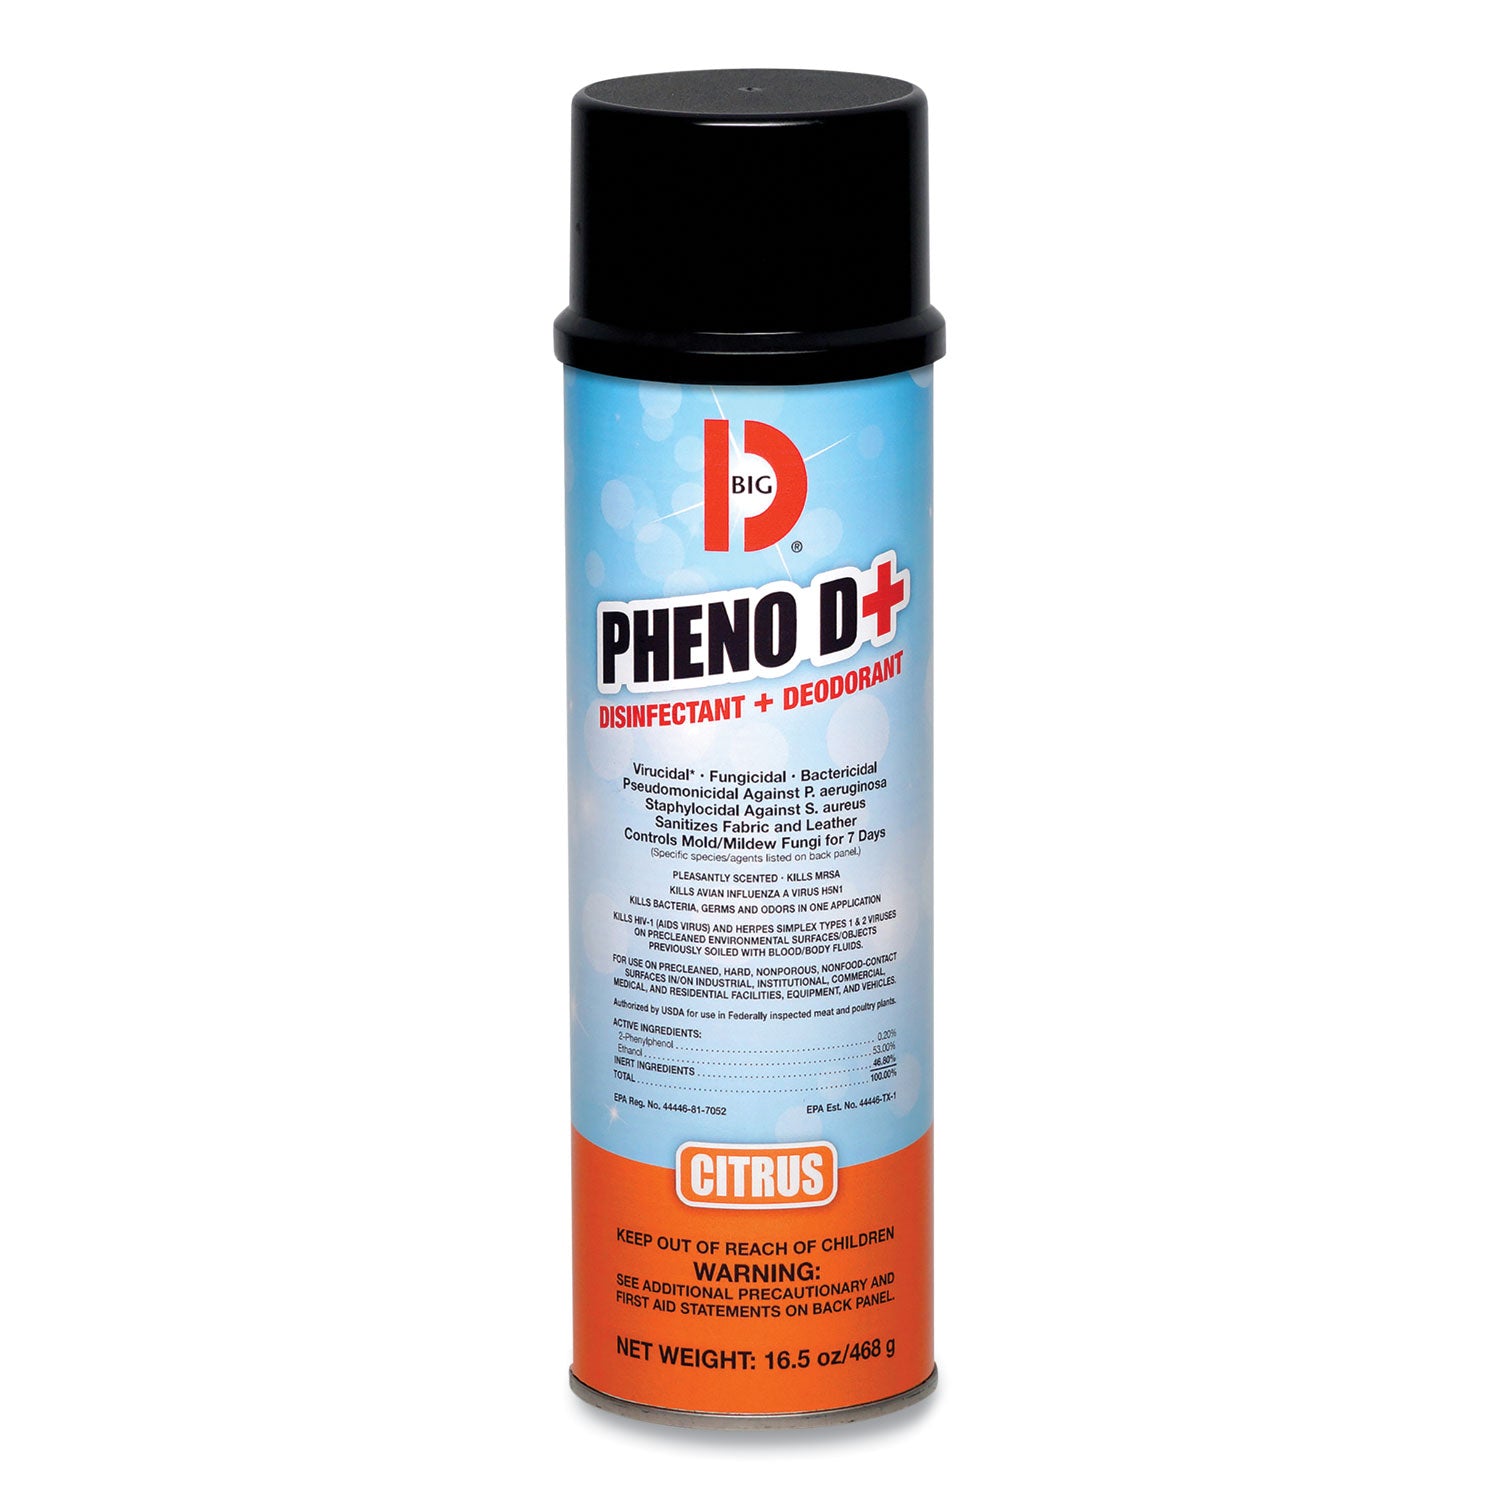 pheno-d+-aerosol-disinfectant-deodorizer-citrus-scent-165-oz-aerosol-spray-can-12-carton_bgd33700 - 1